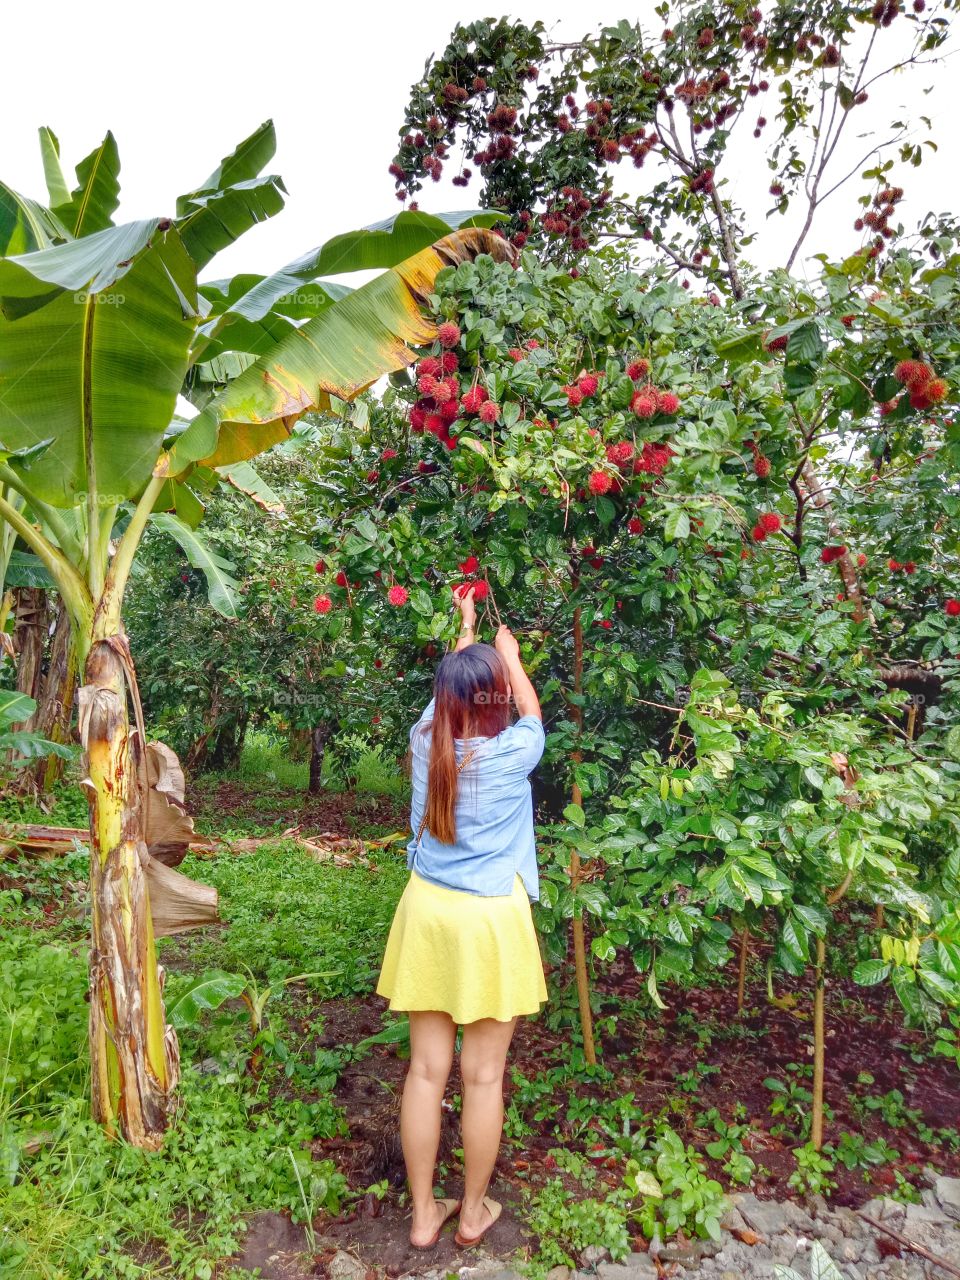 picking of fruits